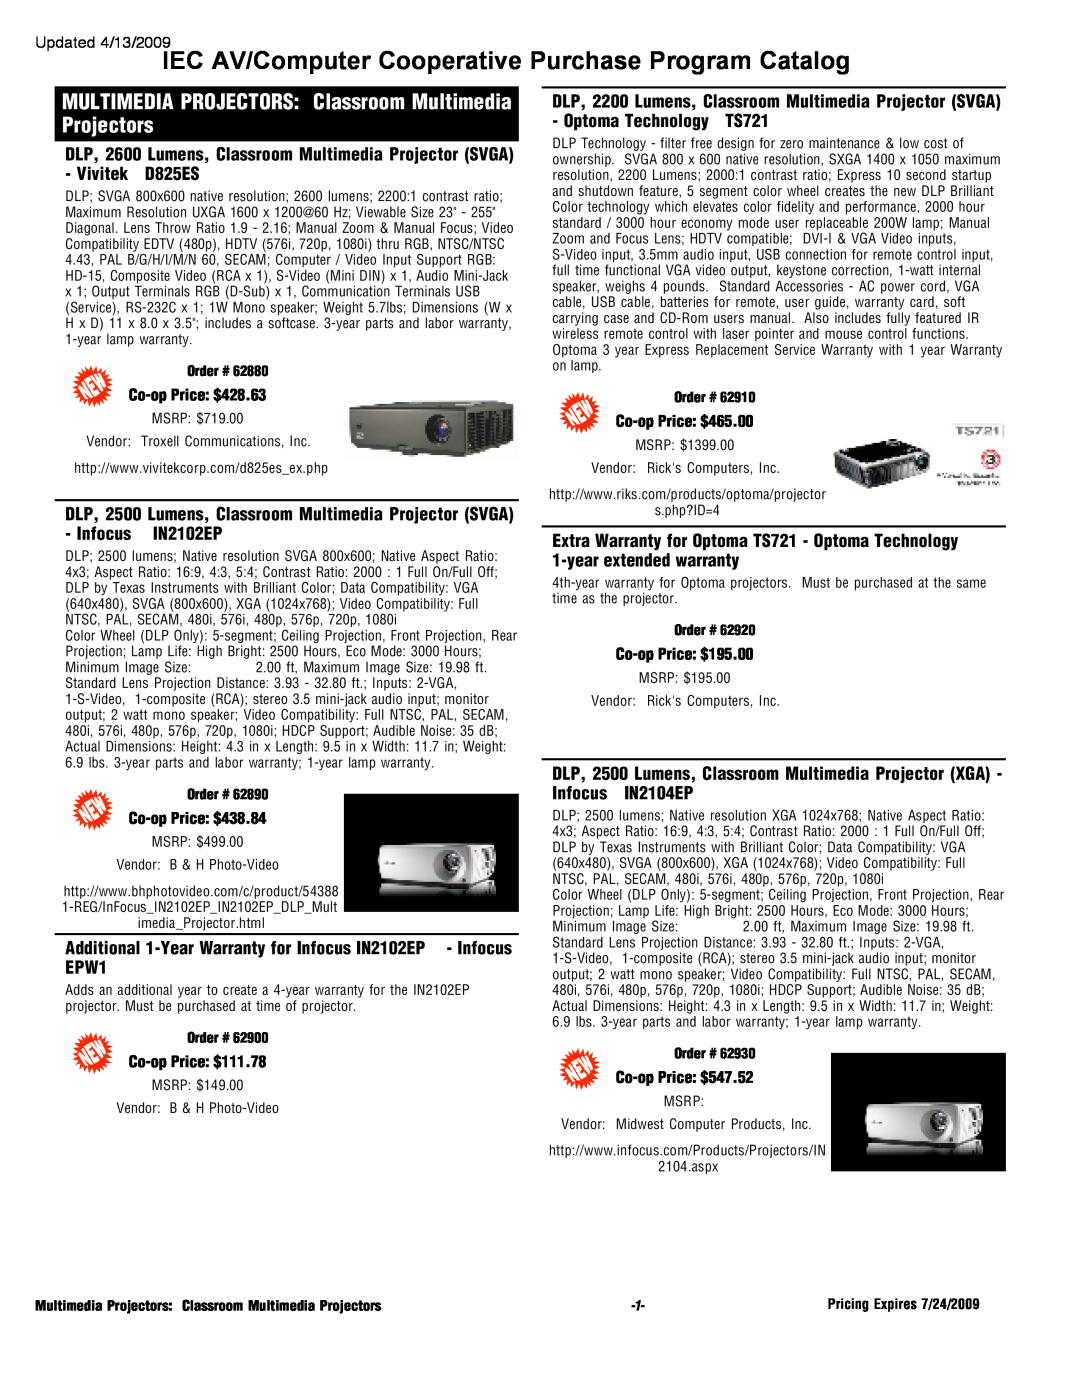 Epson 2500 Lumens, 2200 Lumens warranty Updated 4/13/2009, Co-opPrice $428.63, Co-opPrice $438.84, Co-opPrice: $111.78 